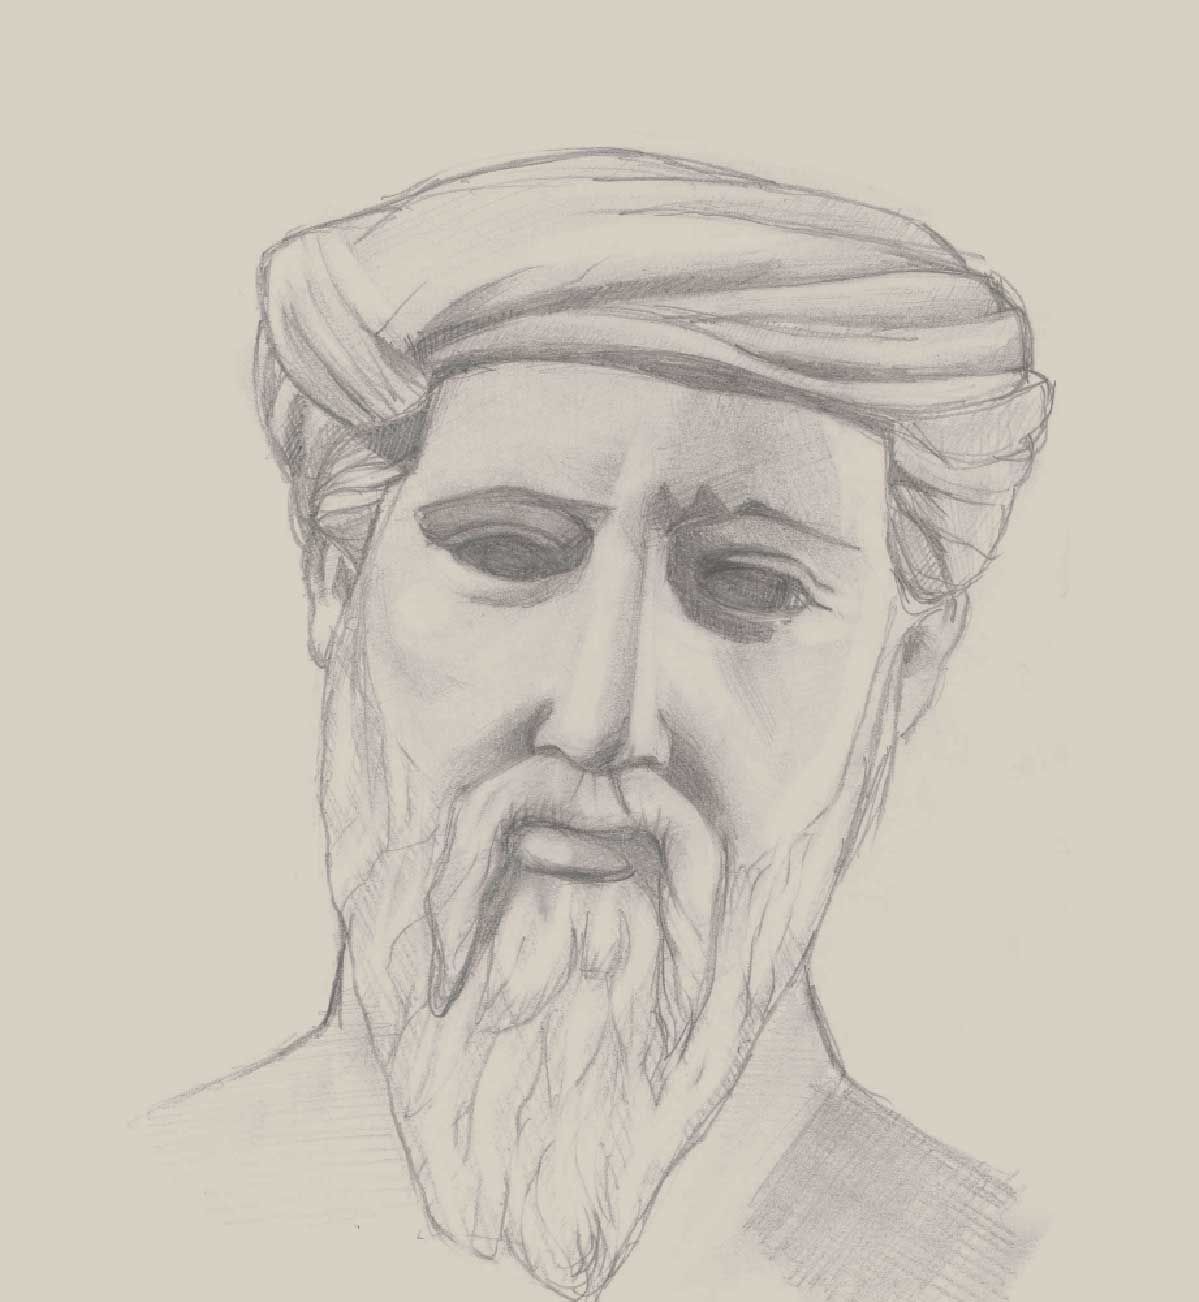 Pythagoras Sketch at Explore collection of